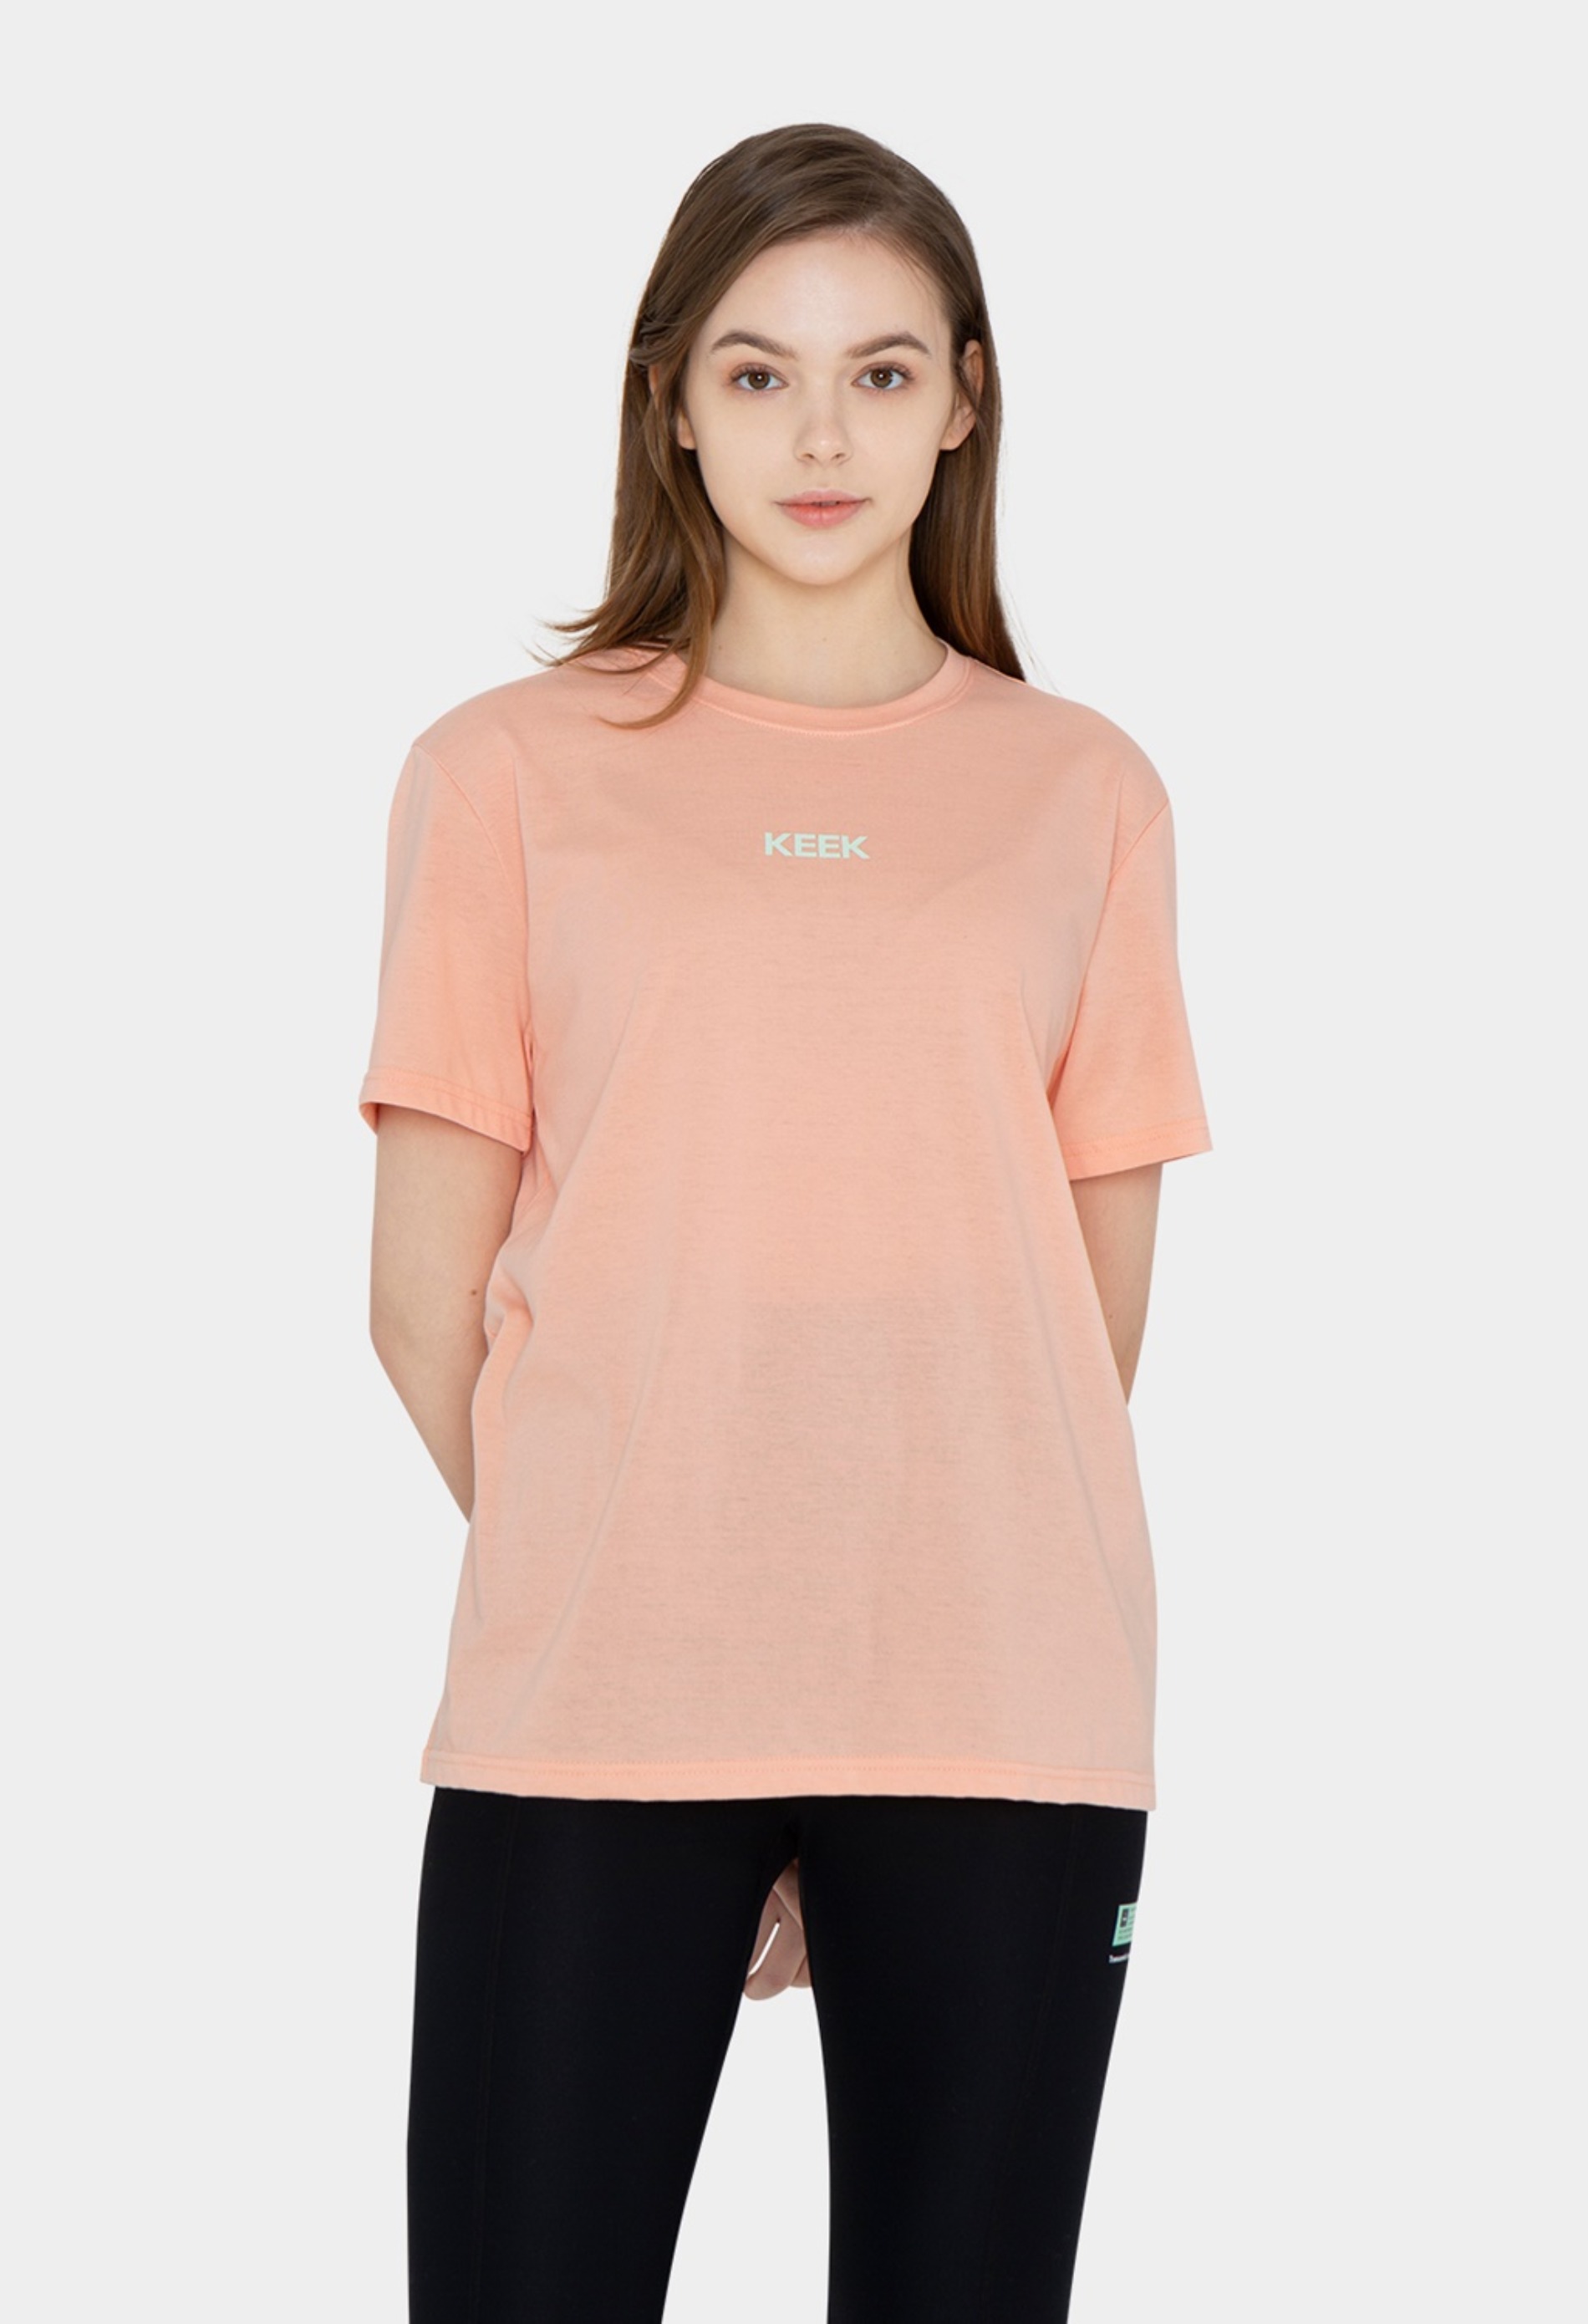 keek [Unisex] Logo Graphic T-shirts - Coral Pink 스트릿패션 유니섹스브랜드 커플시밀러룩 남자쇼핑몰 여성의류쇼핑몰 후드티 힙색